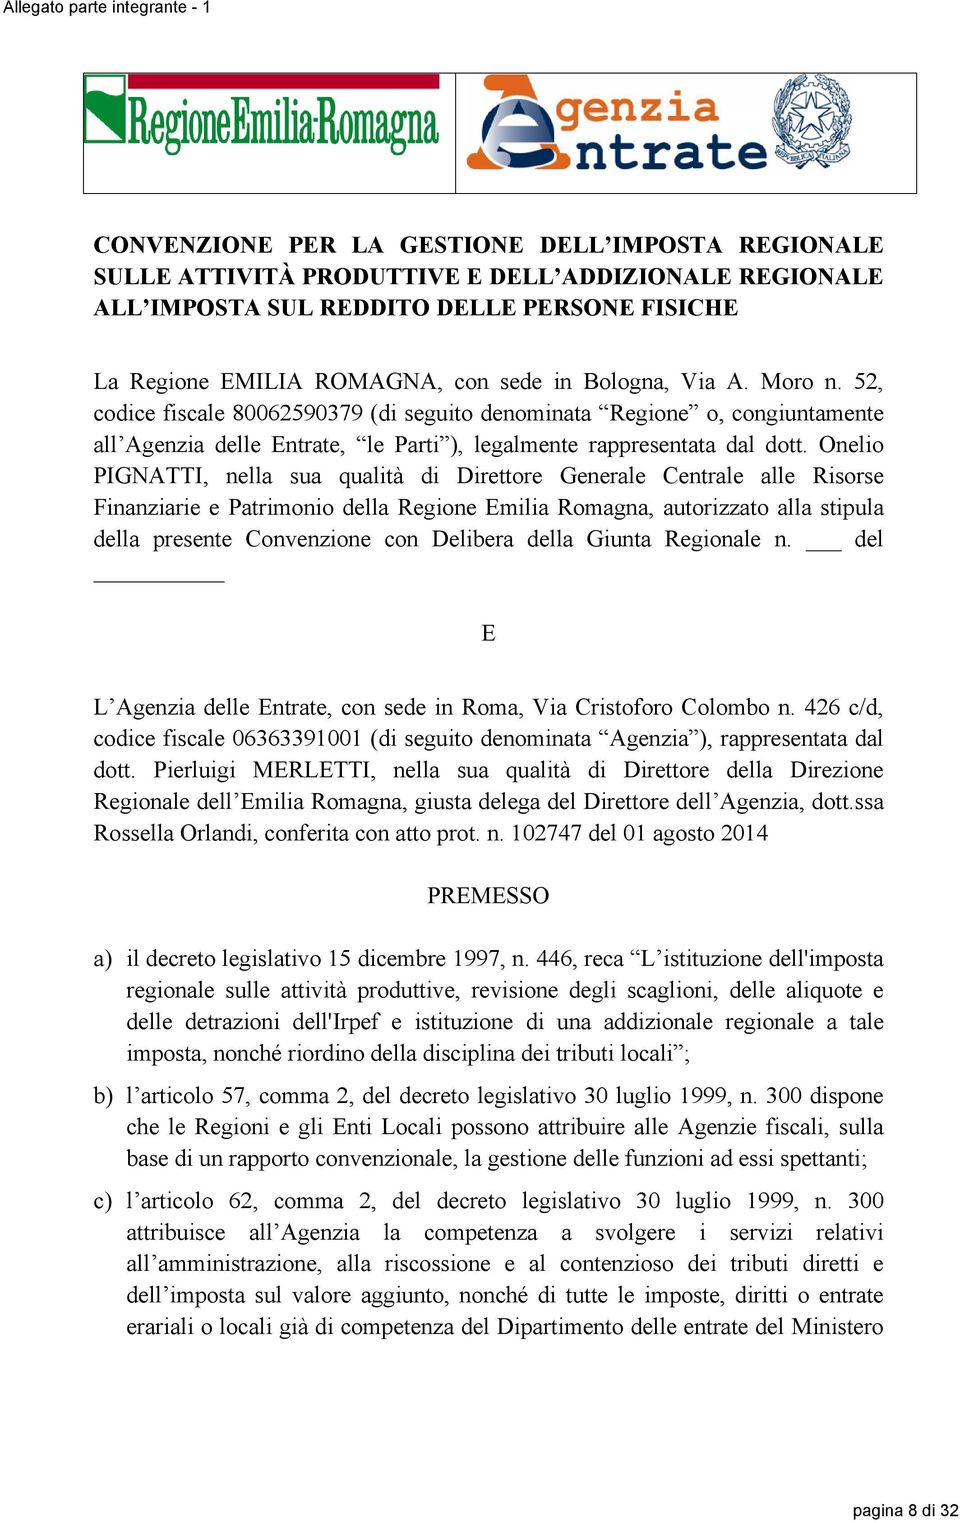 Onelio PIGNATTI, nella sua qualità di Direttore Generale Centrale alle Risorse Finanziarie e Patrimonio della Regione Emilia Romagna, autorizzato alla stipula della presente Convenzione con Delibera